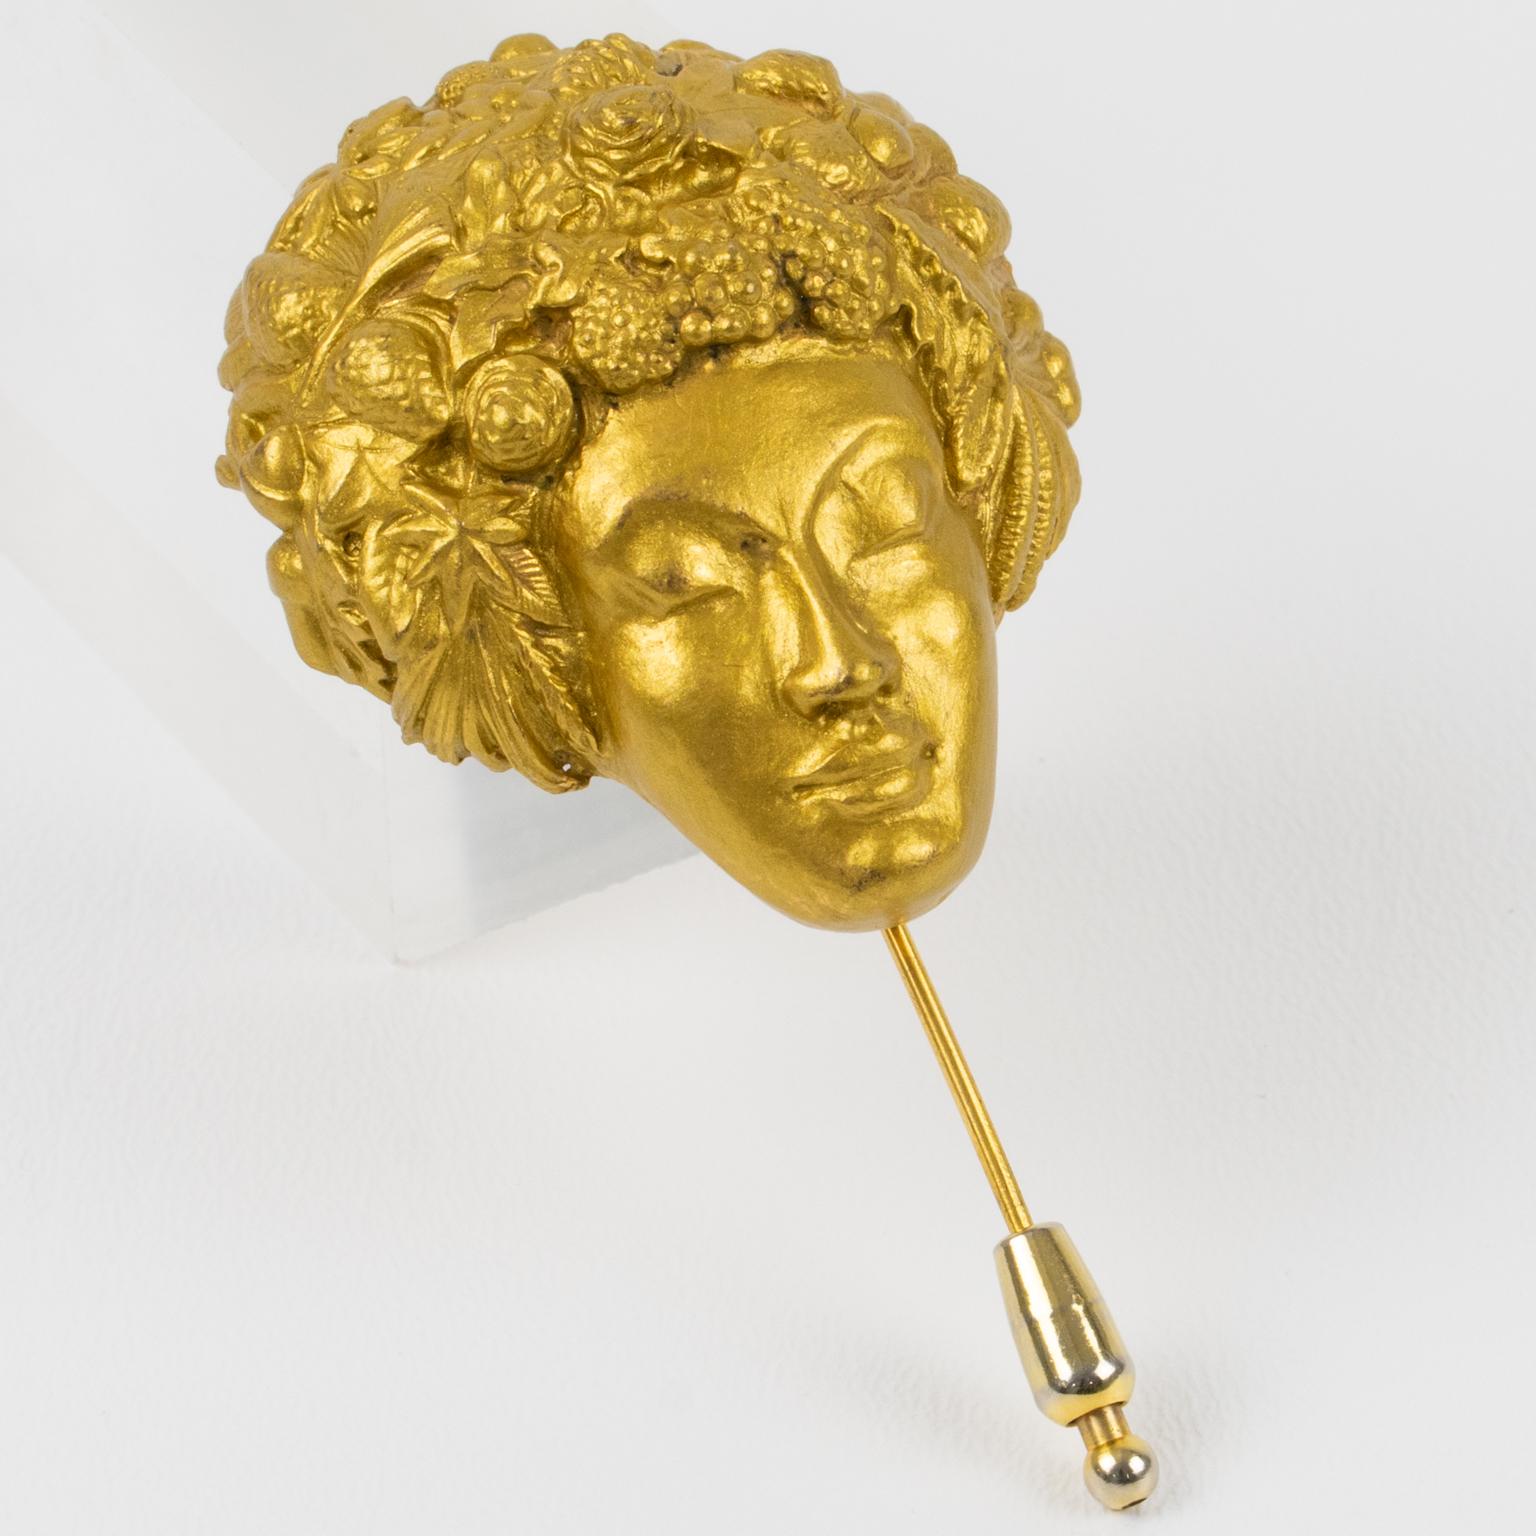 Isabel Canovas, Paris, schuf diese wunderschöne Brosche aus vergoldeter Bronze. Sie hat eine Gesichtsmaske mit Schnitzereien und raffinierten Details. Die Anstecknadel hat einen langen Steckverschluss auf der Rückseite mit der eingravierten Signatur